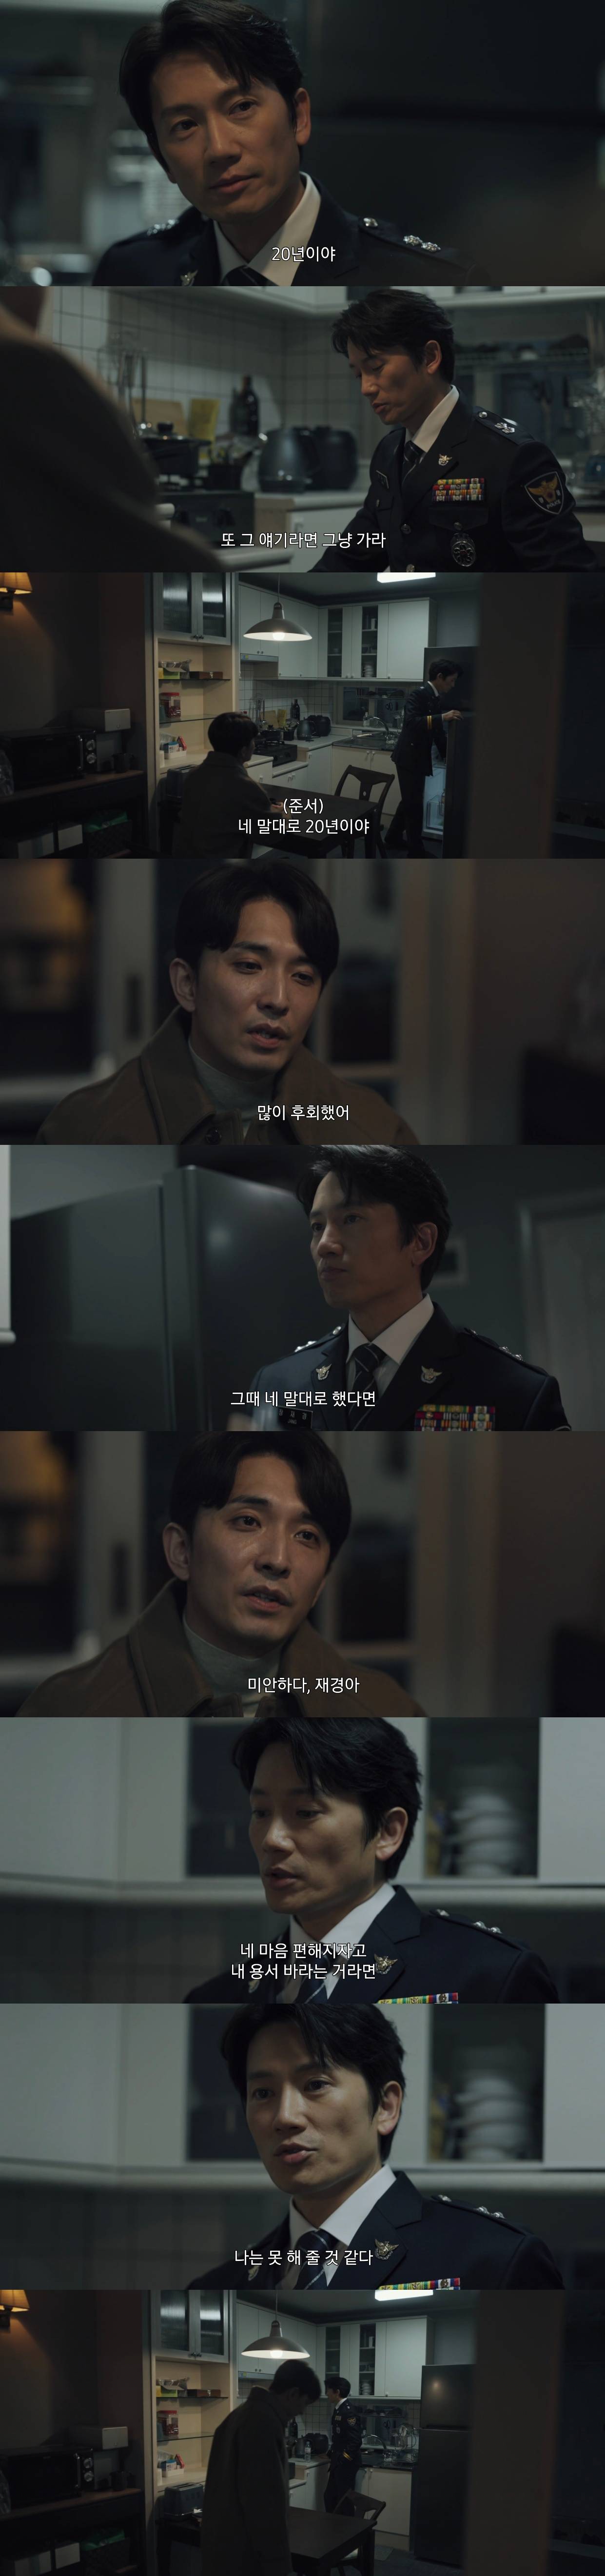 비밀의숲이랑 비슷한 현재 방영중인 SBS 드라마 커넥션.jpg | 인스티즈